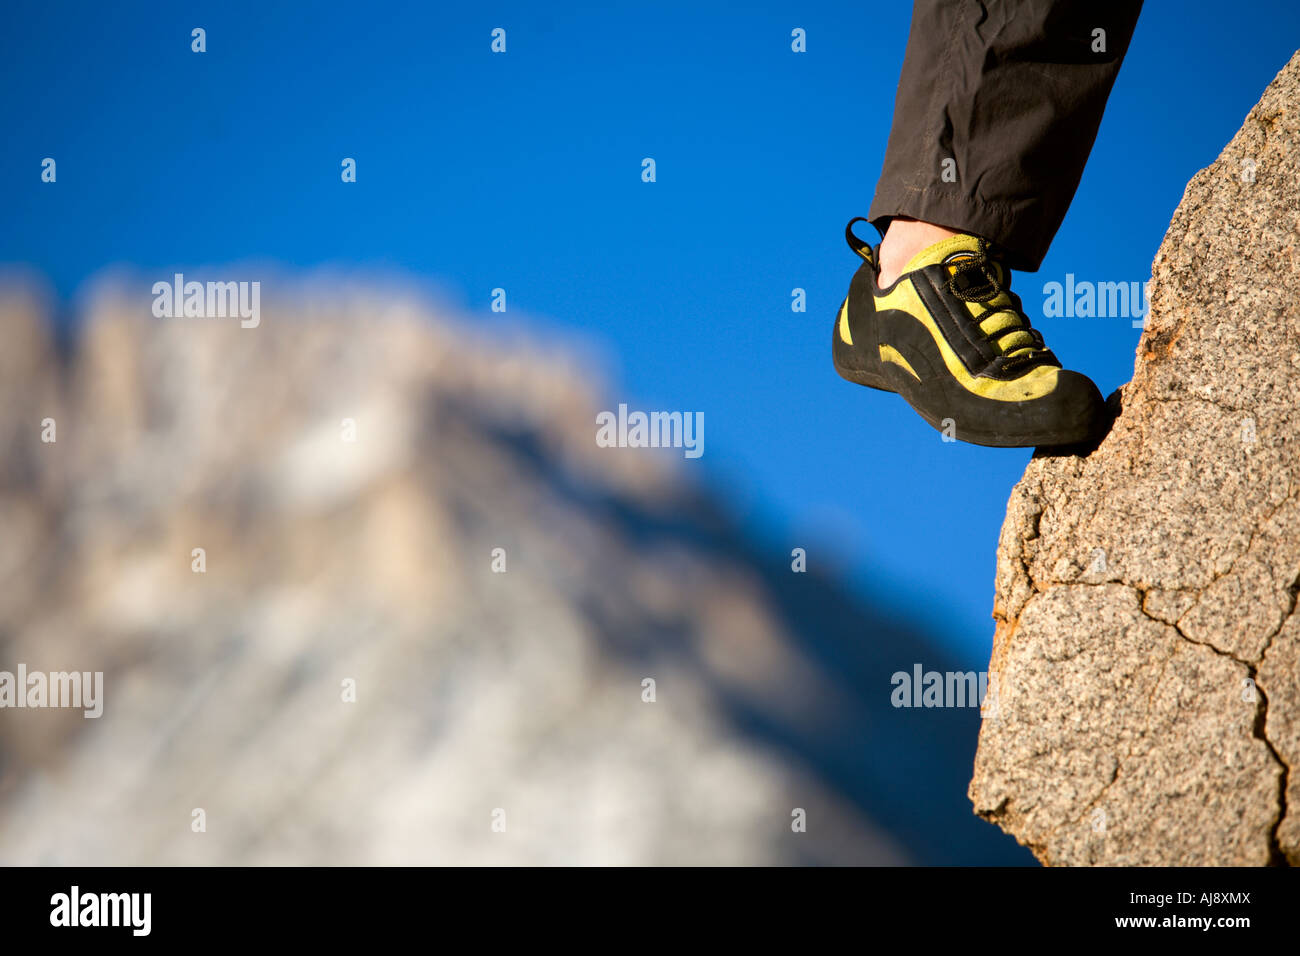 Le pied d'un grimpeur dans une chaussure sur un pied Banque D'Images